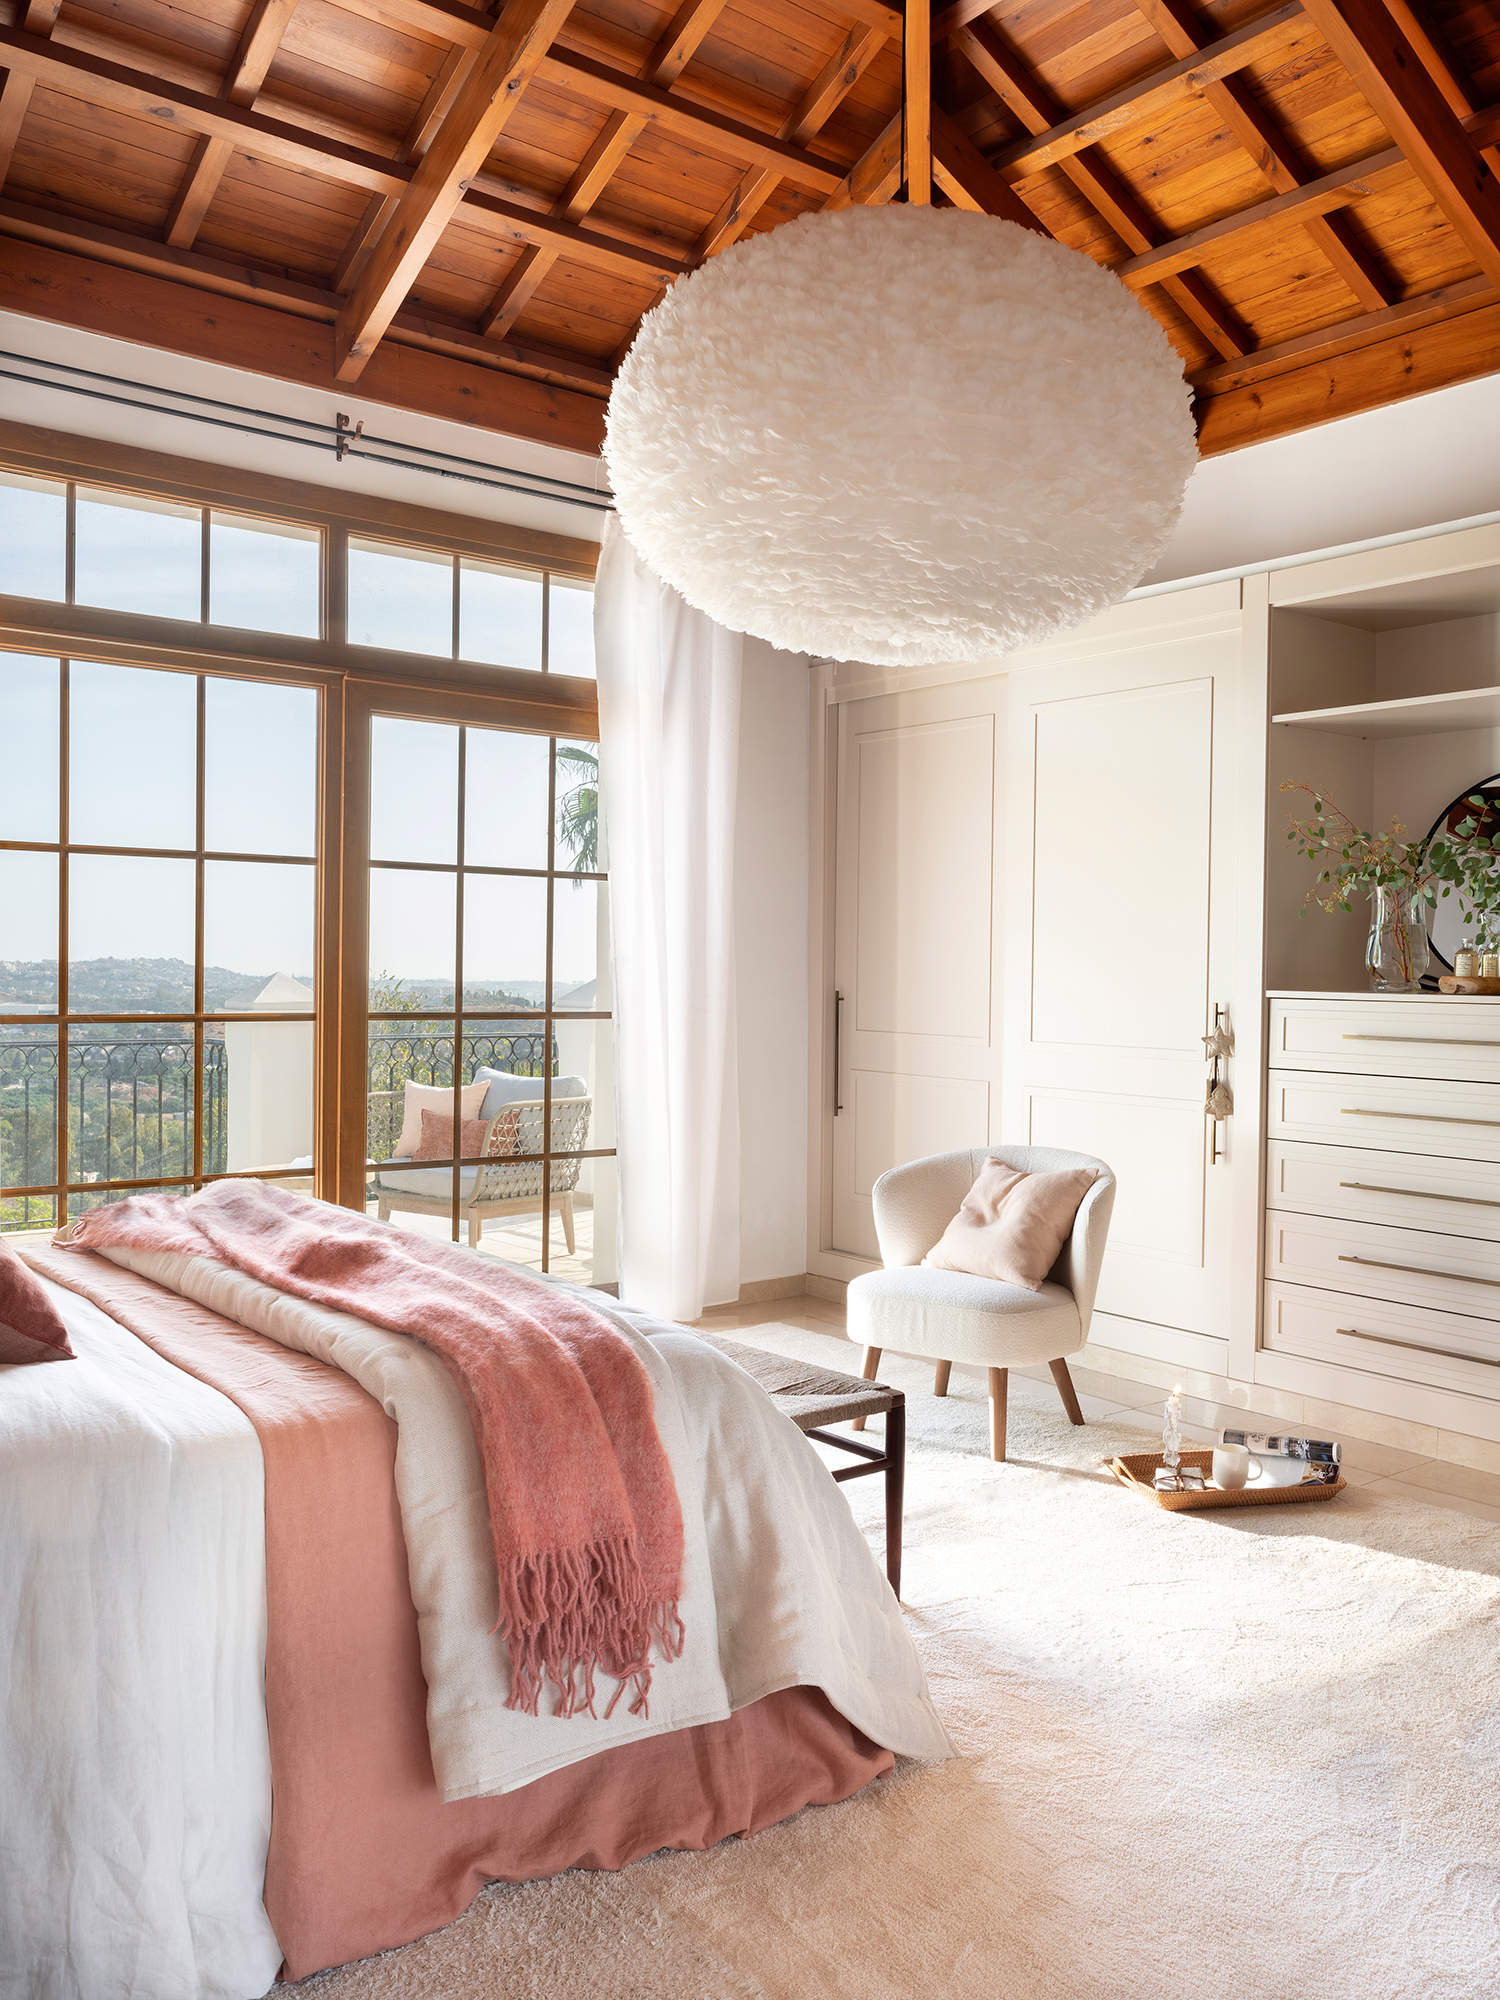 Dormitorio con ventanal y techo de madera.